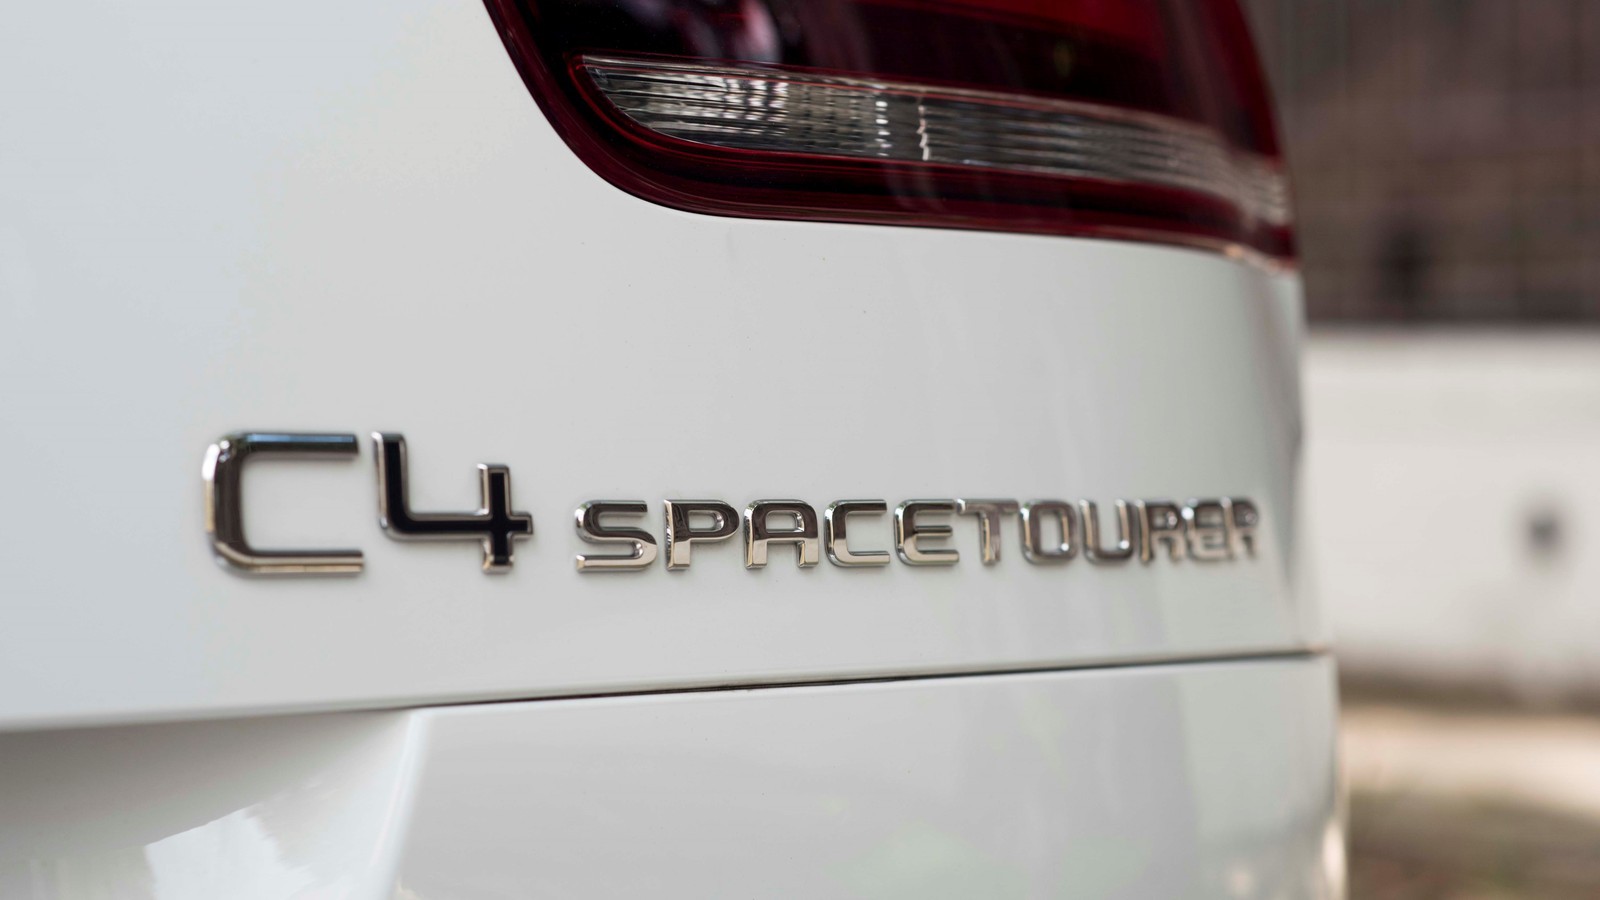 Ещё одна жертва SUV: Citroen готов отказаться от компактвэна C4 SpaceTourer